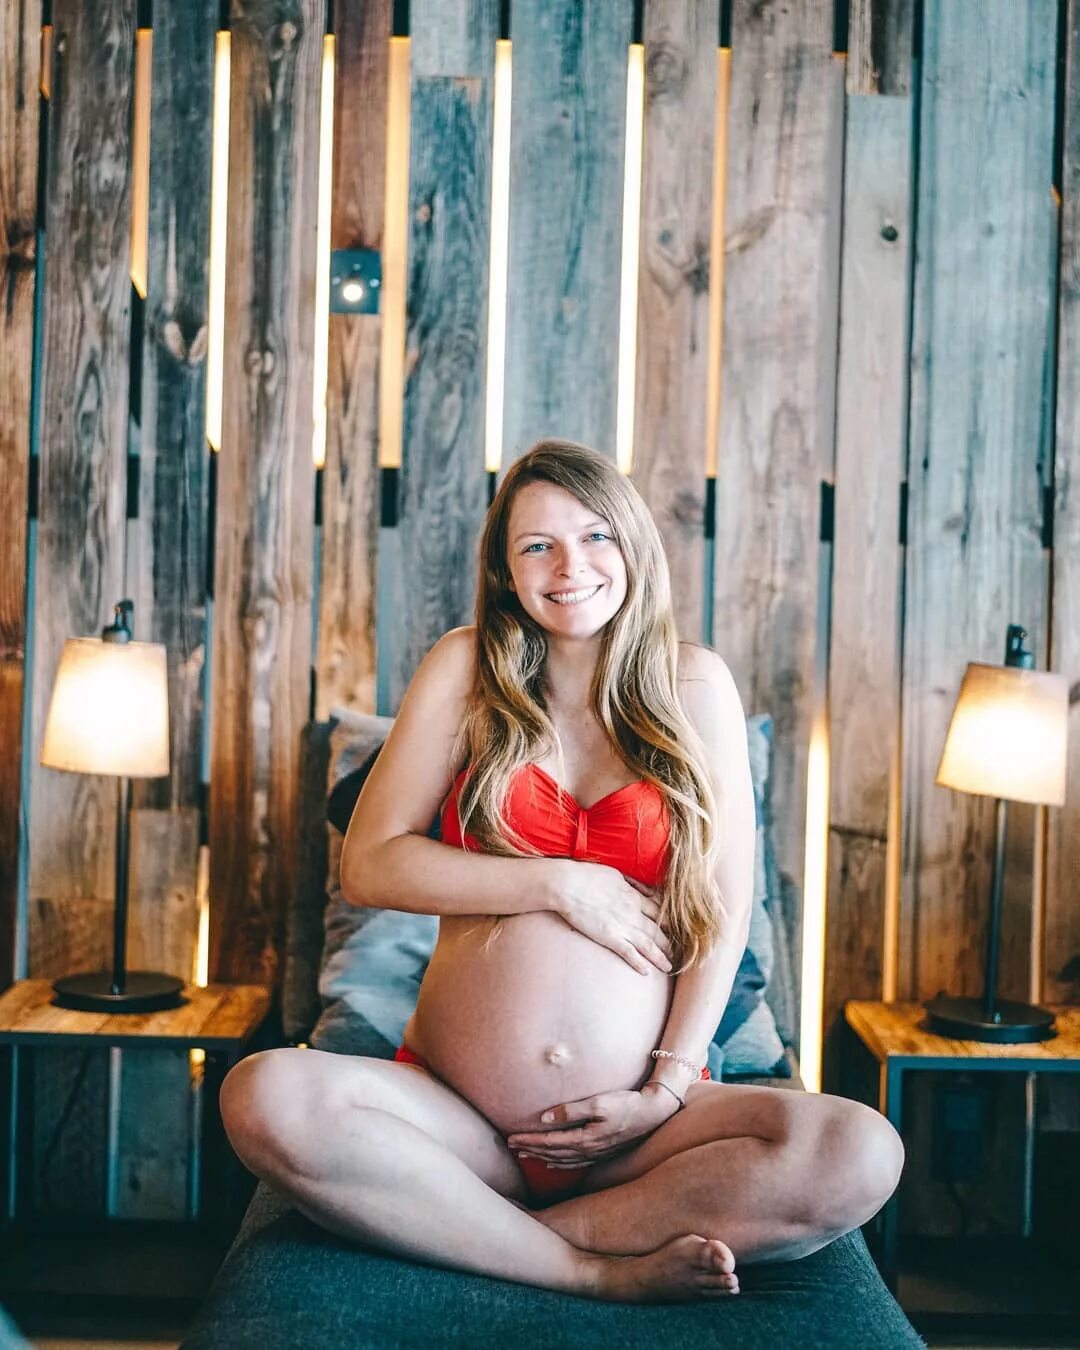 Christine Neder Ð² Instagram: "Acht Monate bin ich jetzt schon schwange...